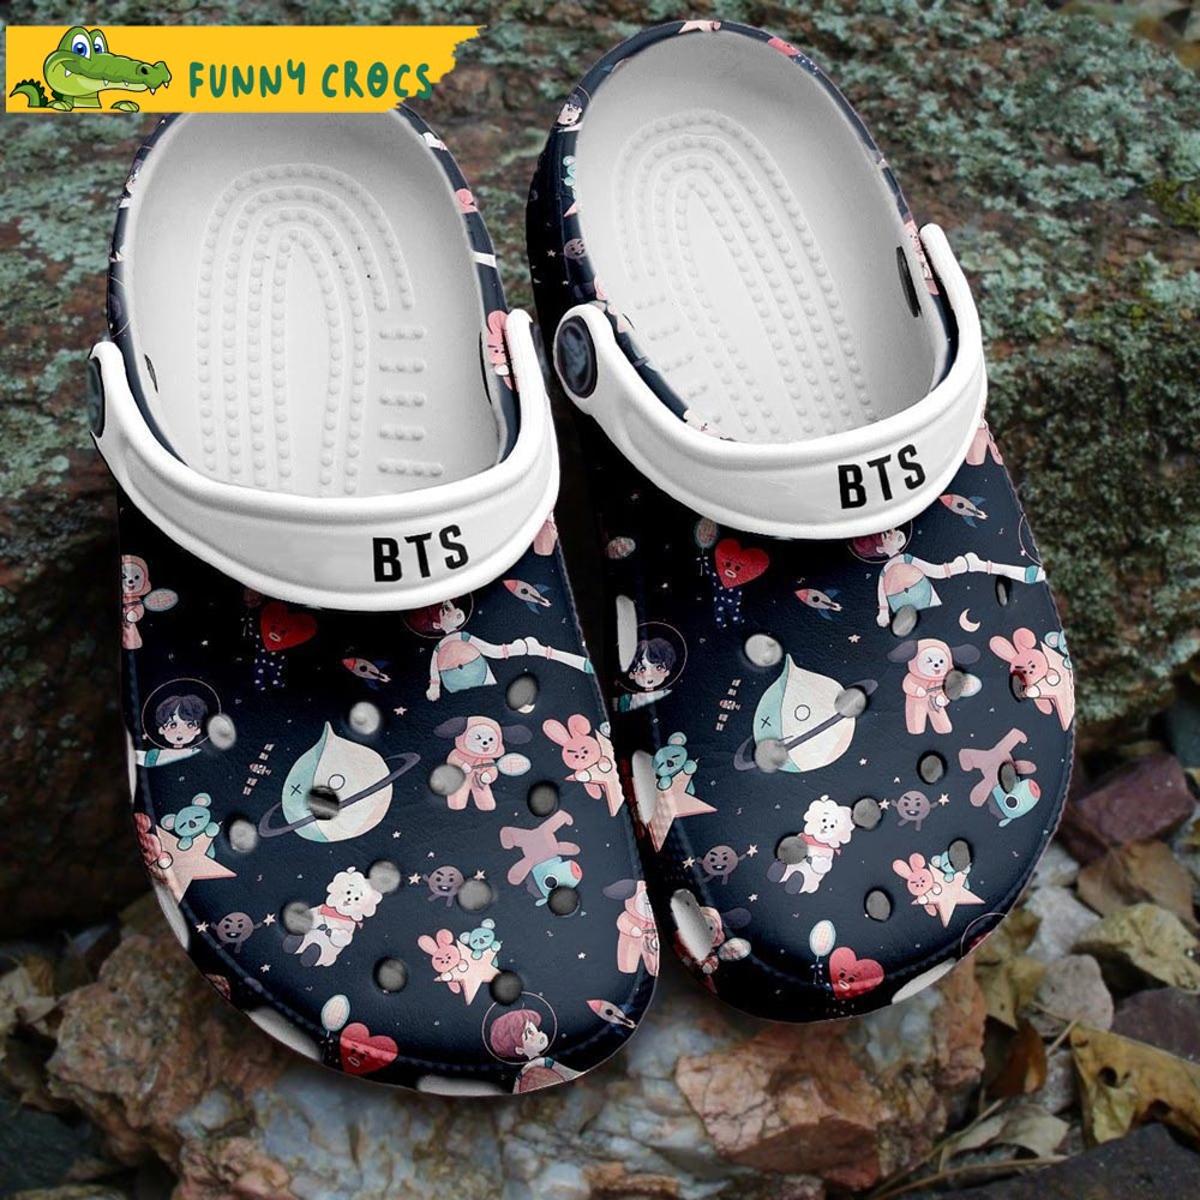 Bt21 Bts Crocs Sandals